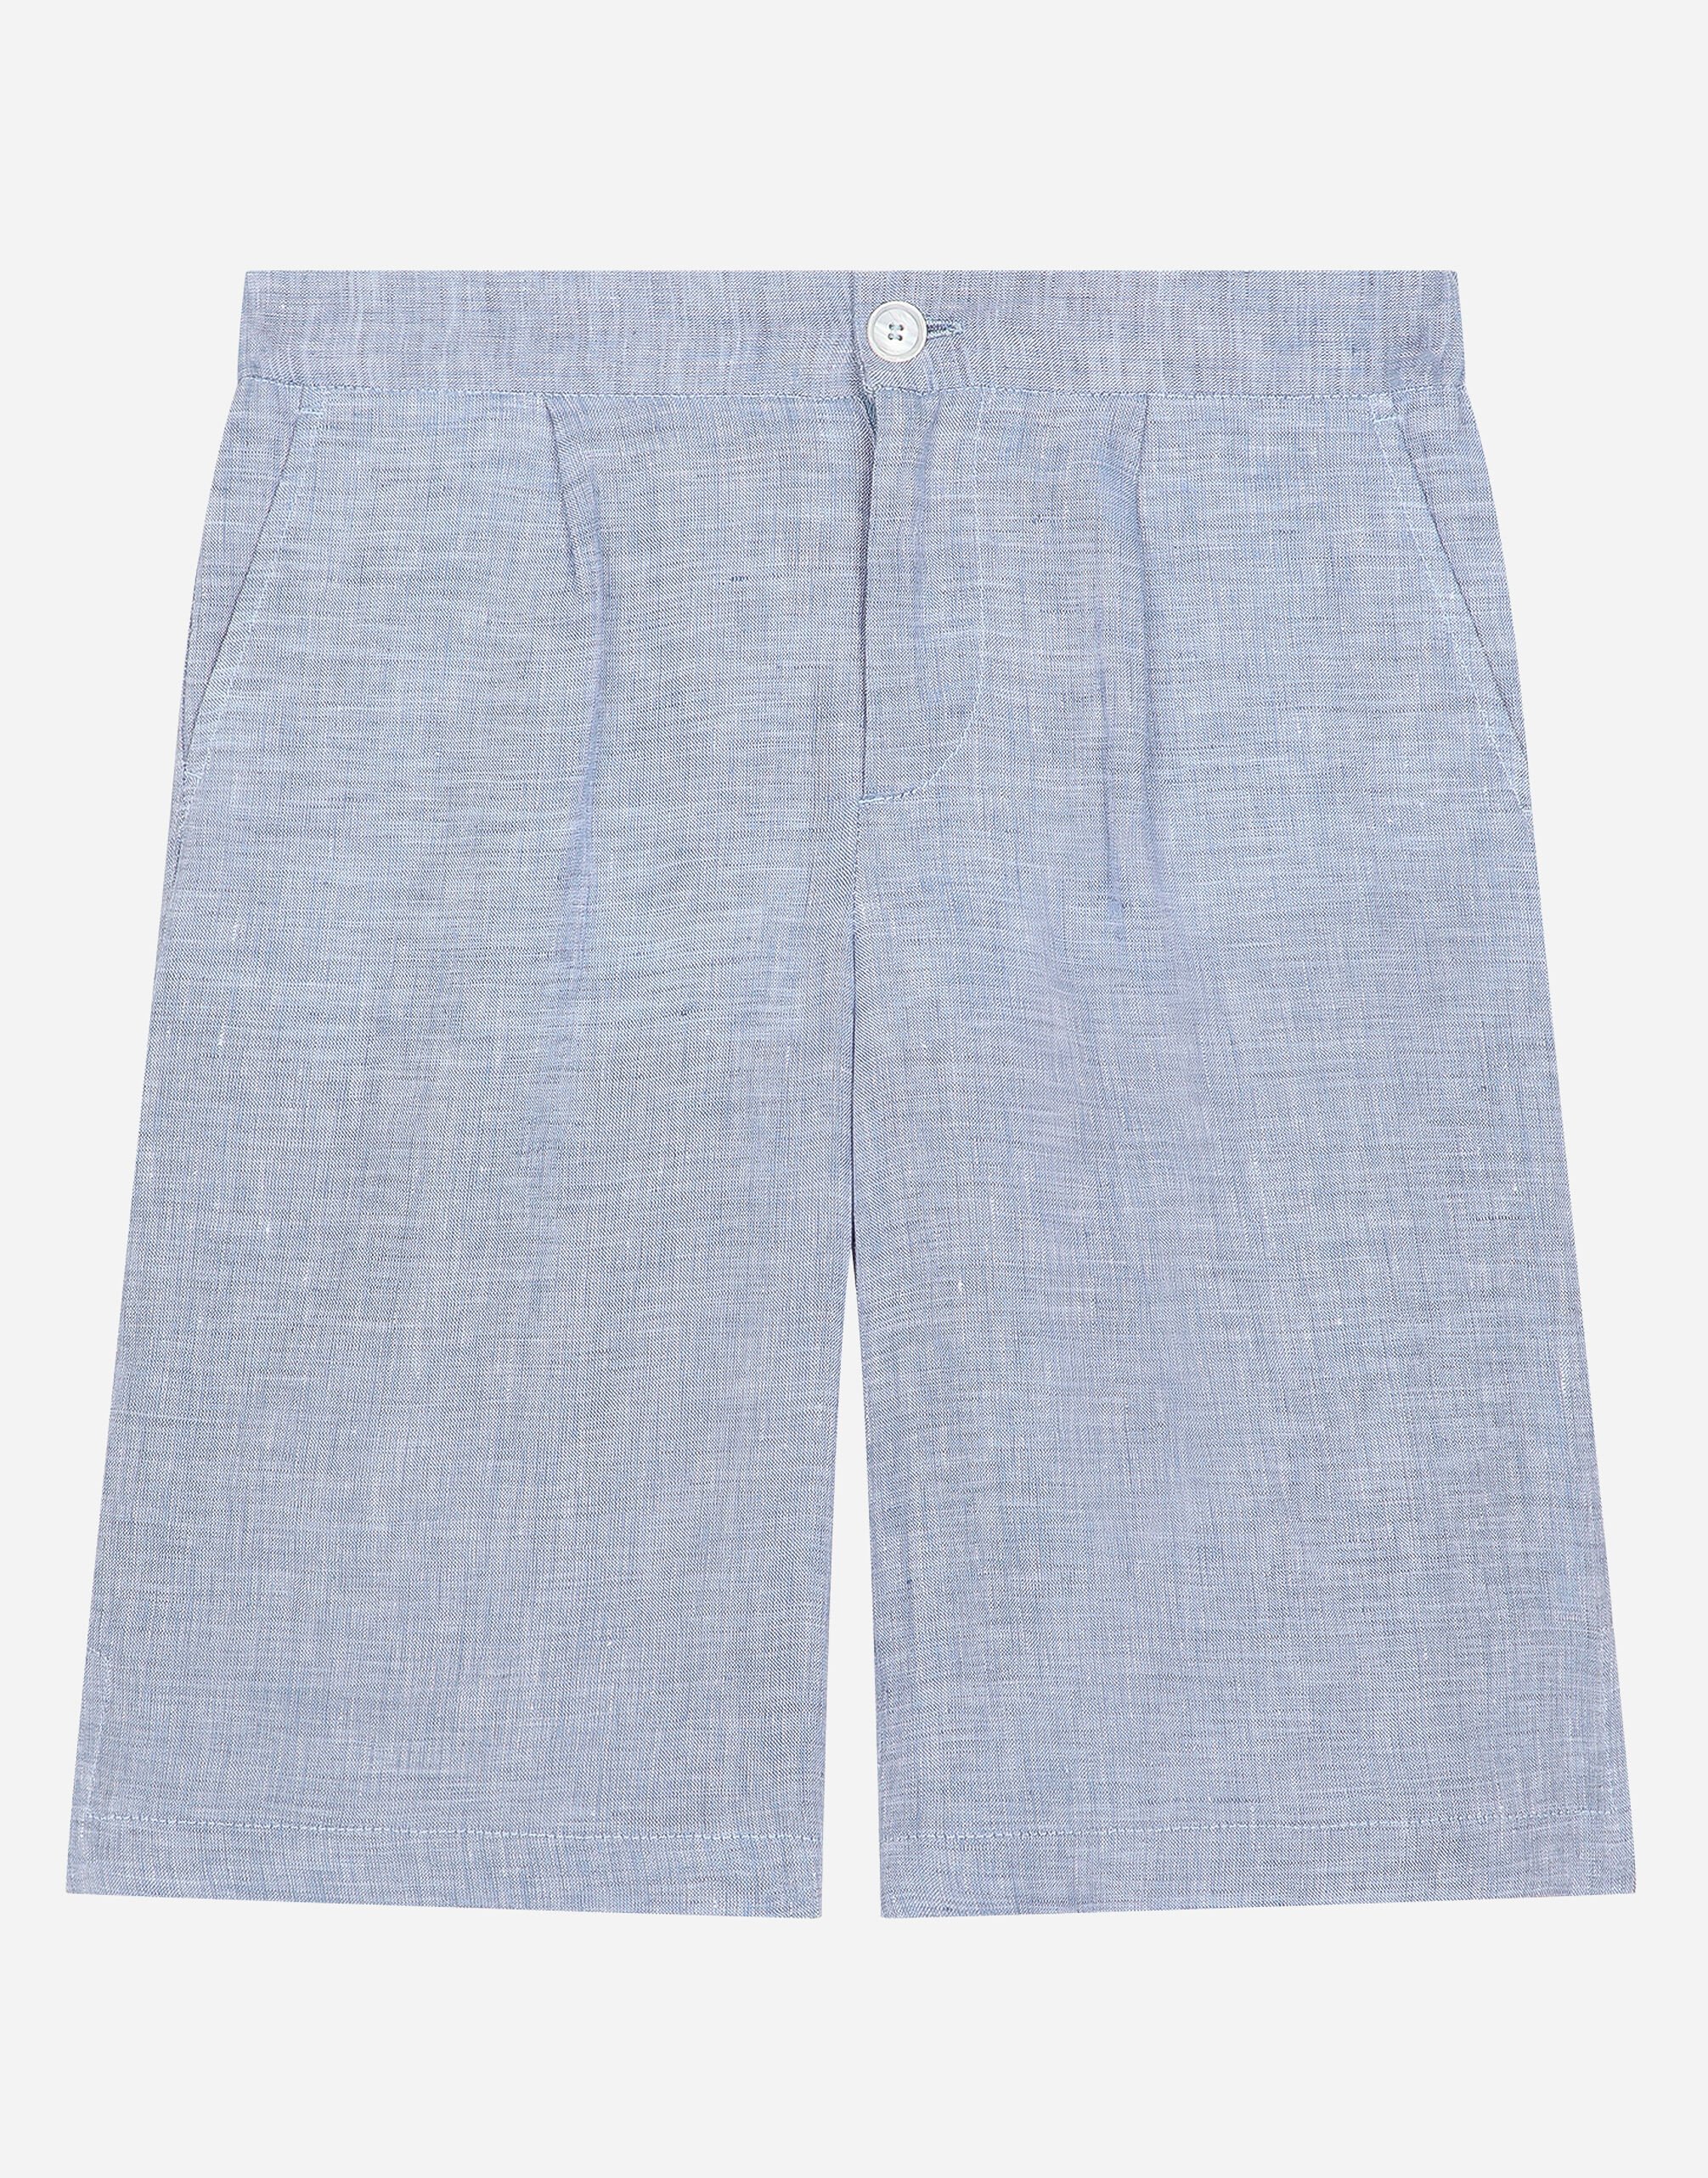 Dolce&Gabbana Non-stretch linen shorts Multicolor CS2203AO277